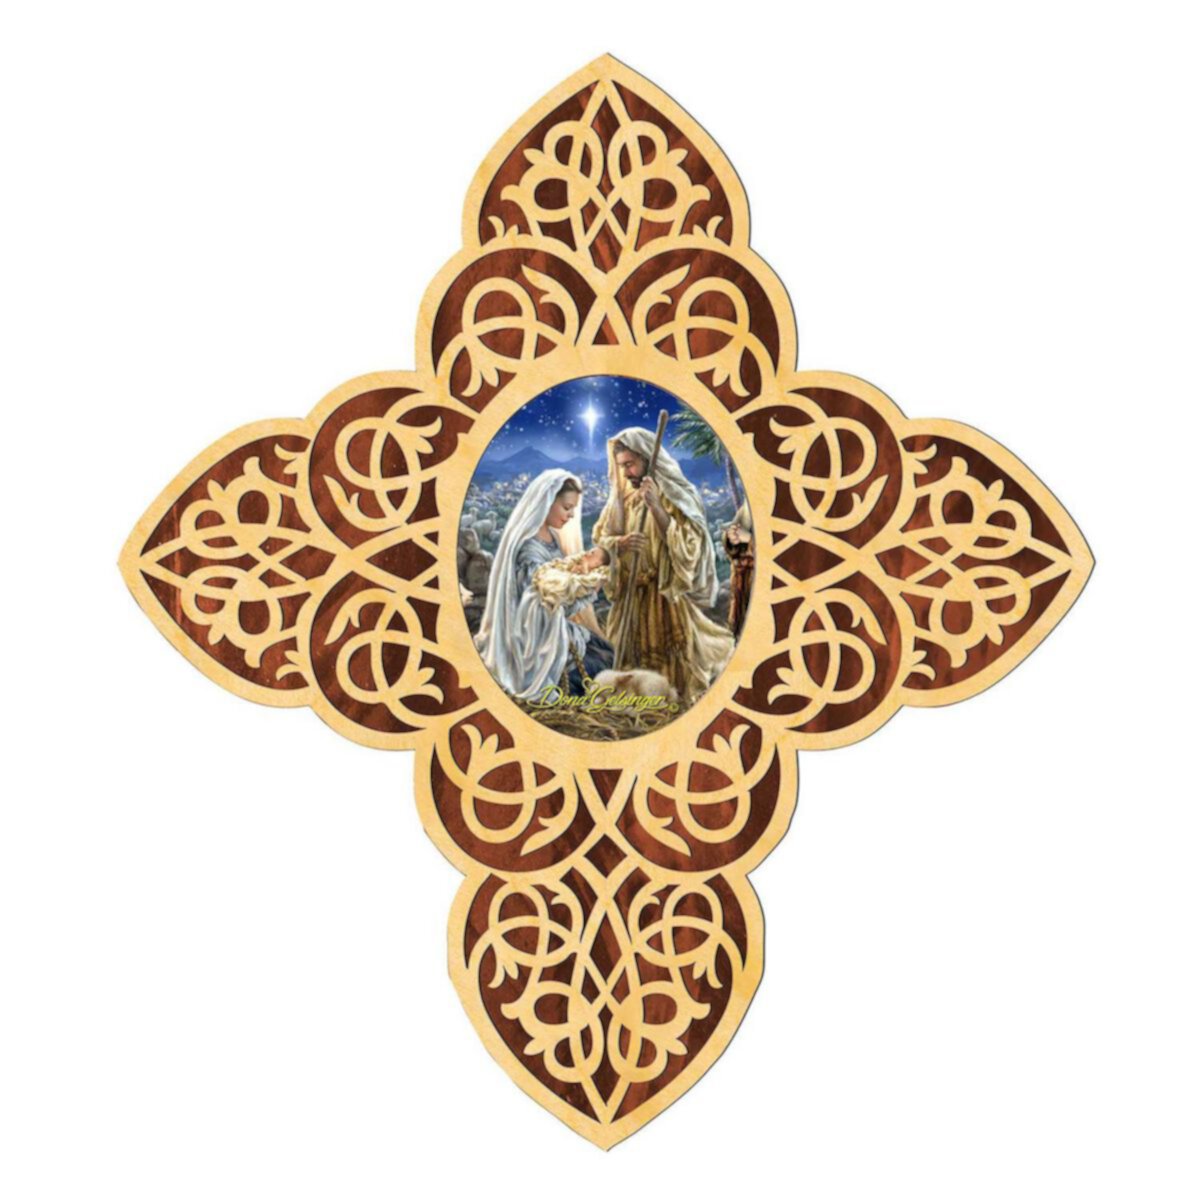 G.Debrekht Holy Family Filigree Wooden Cross by D. Gelsinger Inspirational Icon Decor - 88483-DG G.DeBrekht